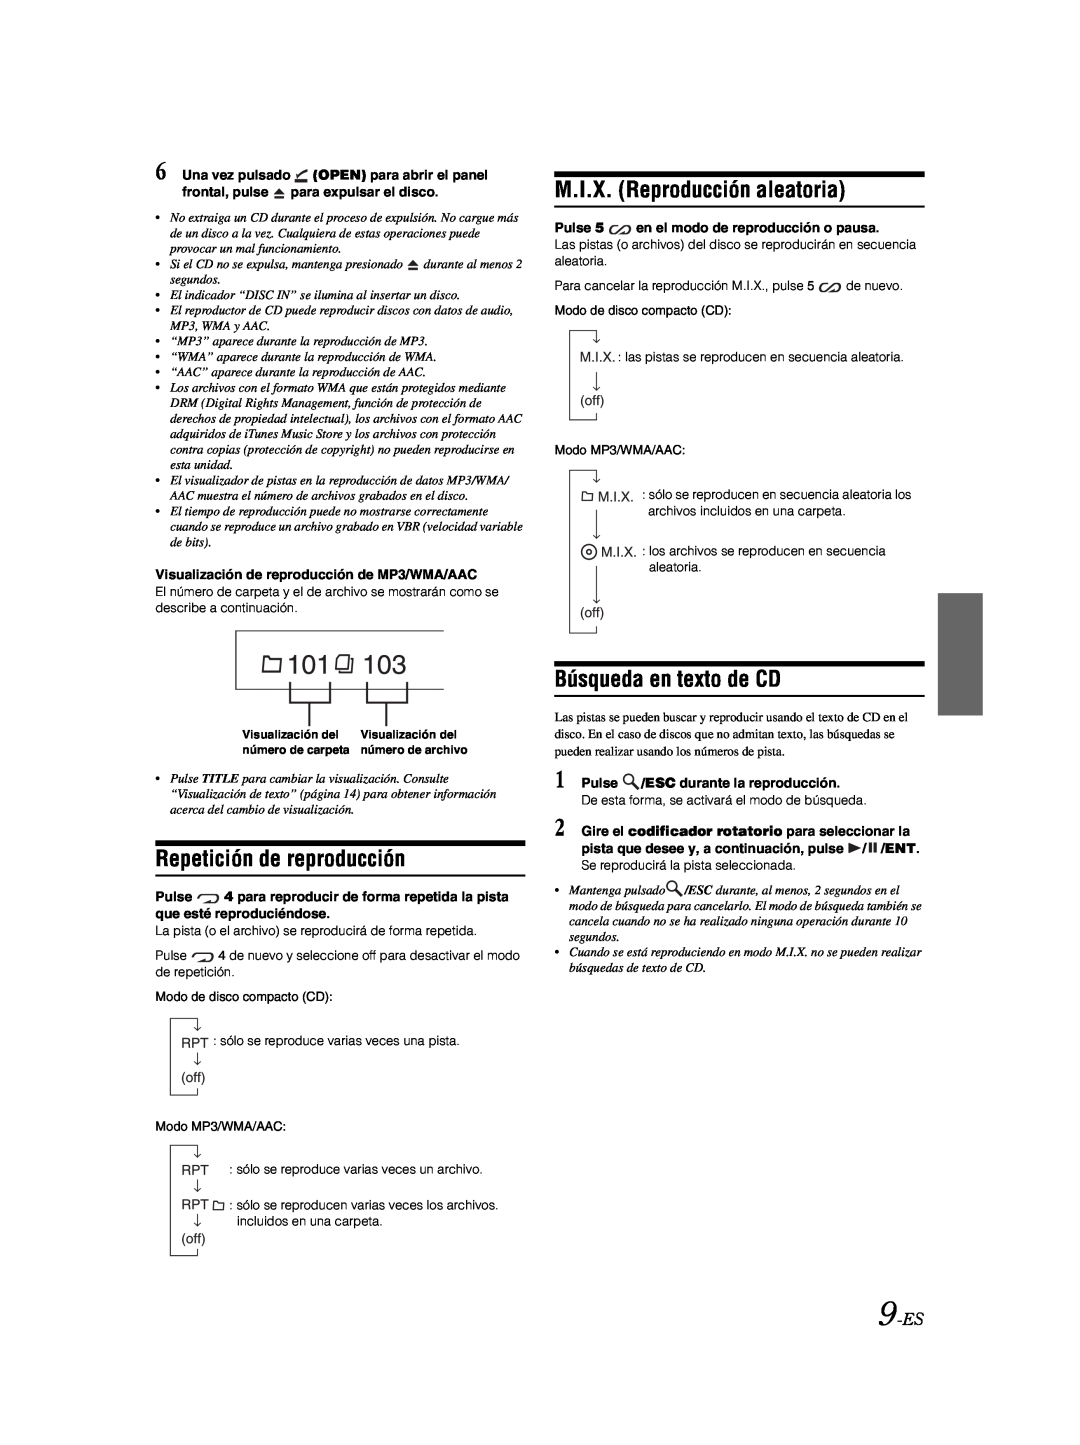 Alpine CDE-9881 owner manual M.I.X. Reproducción aleatoria, Repetición de reproducción, Búsqueda en texto de CD, 9-ES 